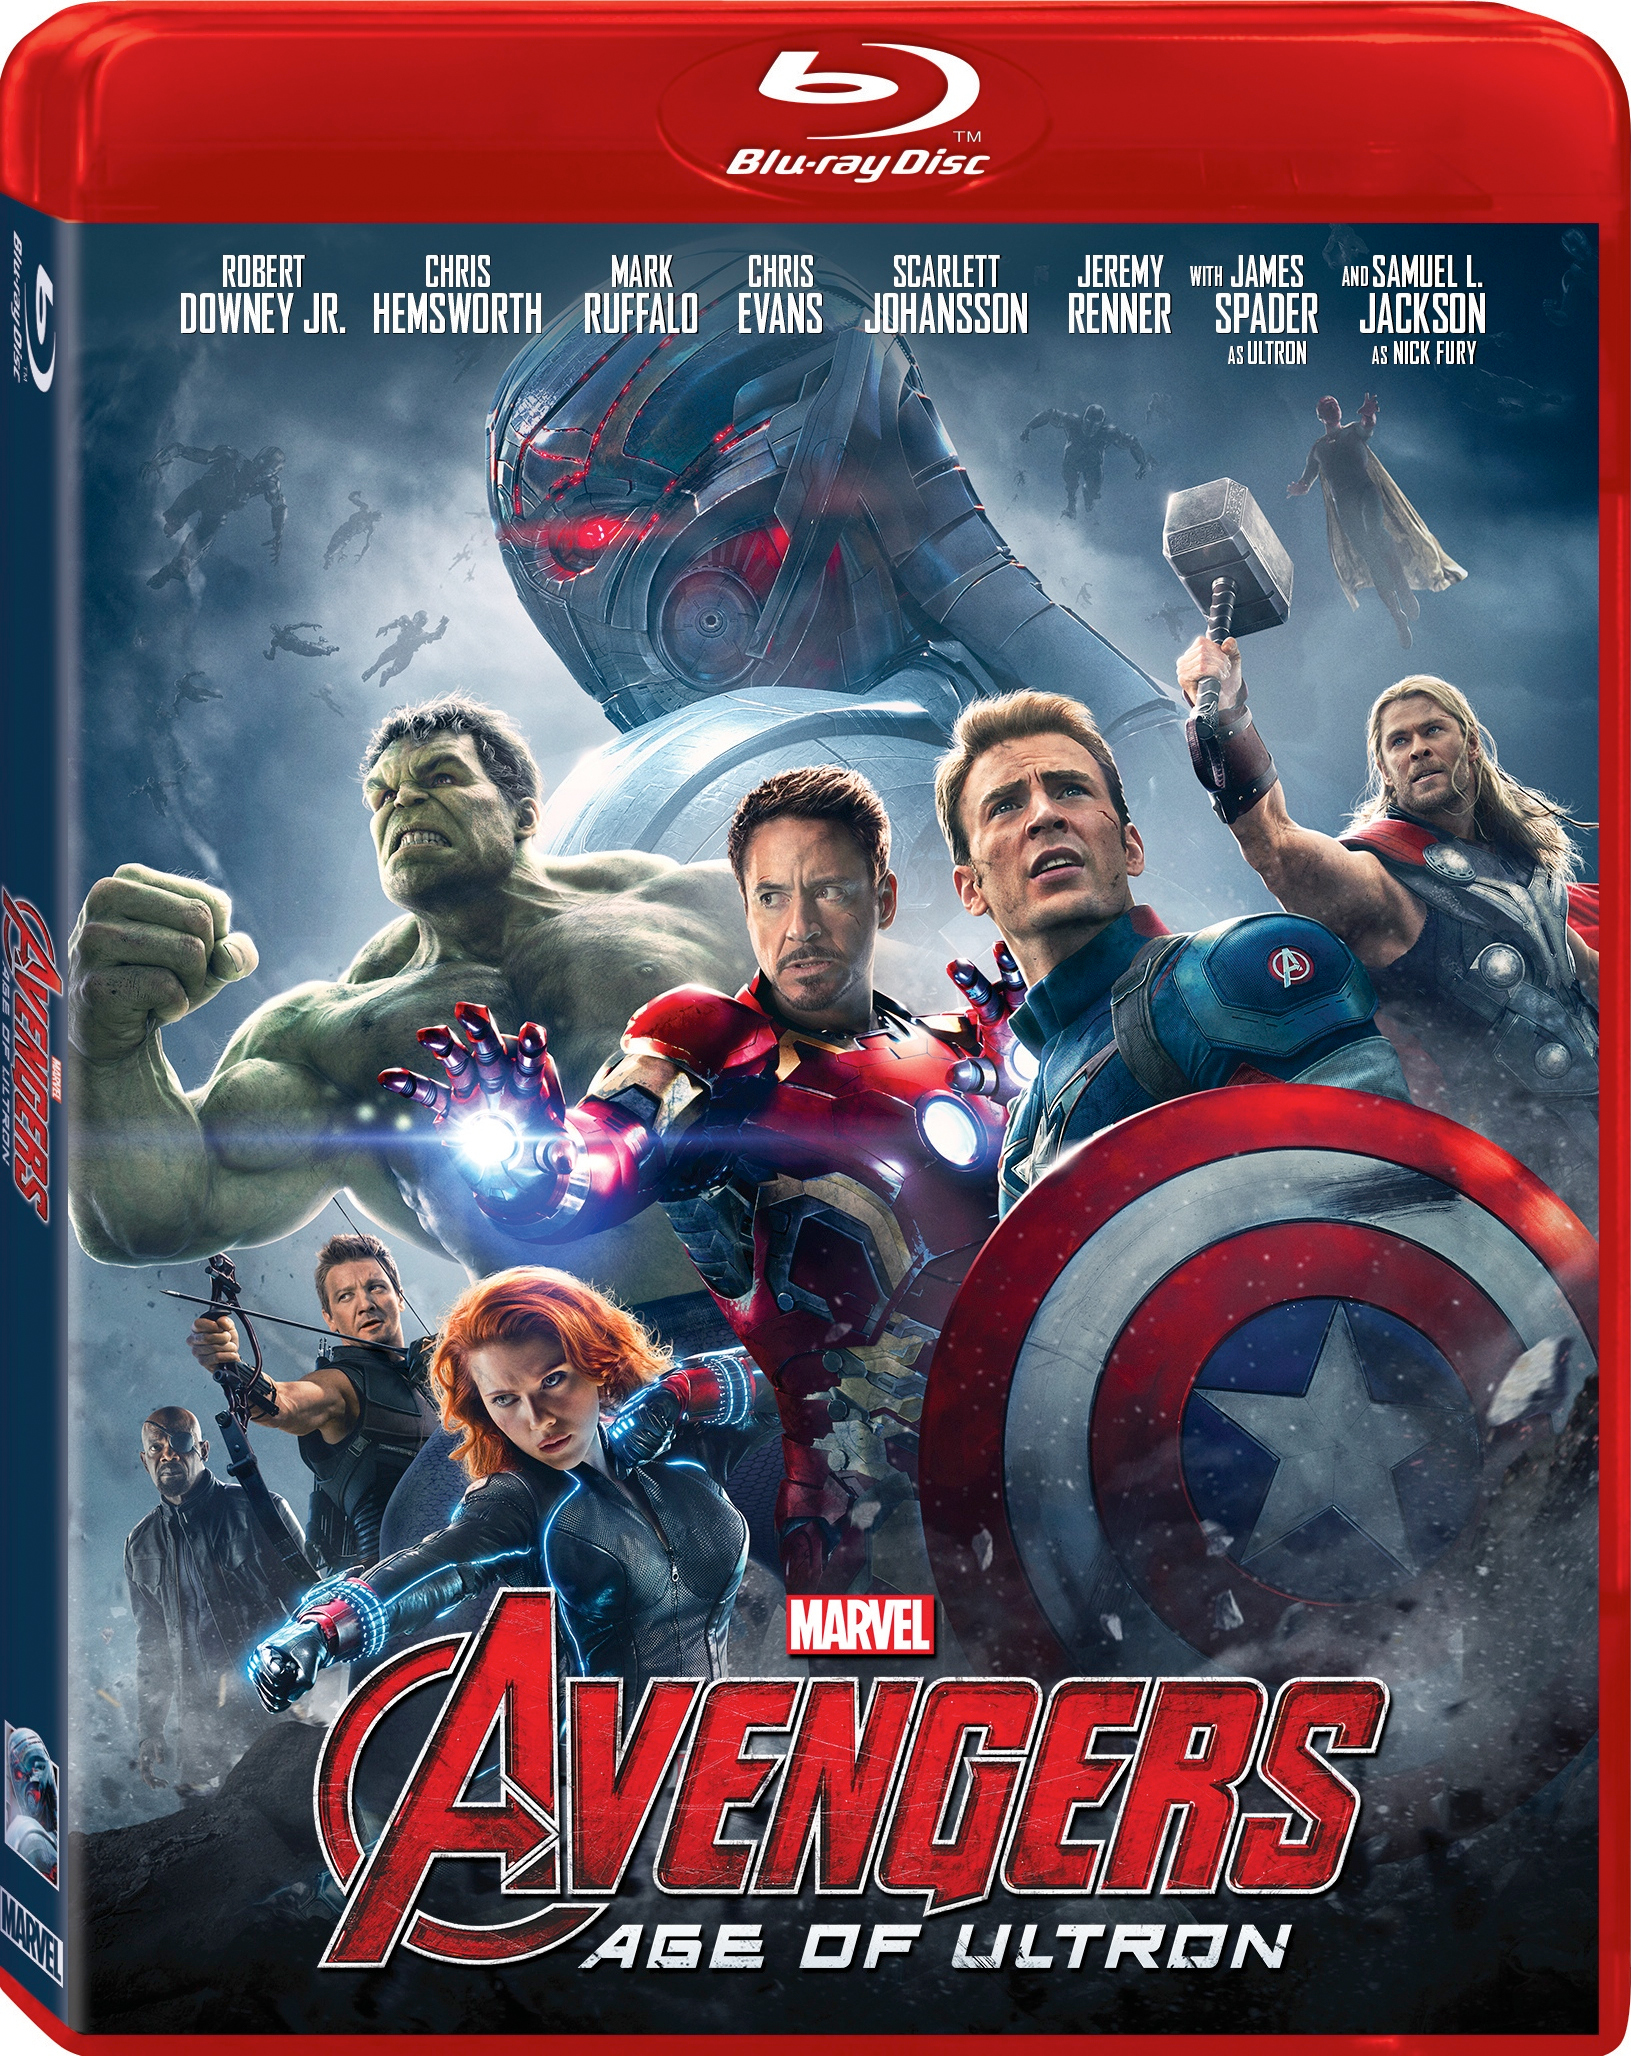 [复仇者联盟2].Avengers.Age.of.Ultron.2015.UHD.BluRay.2160p.HEVC.TrueHD.7.1-TERMiNAL    55.11G-4.jpg